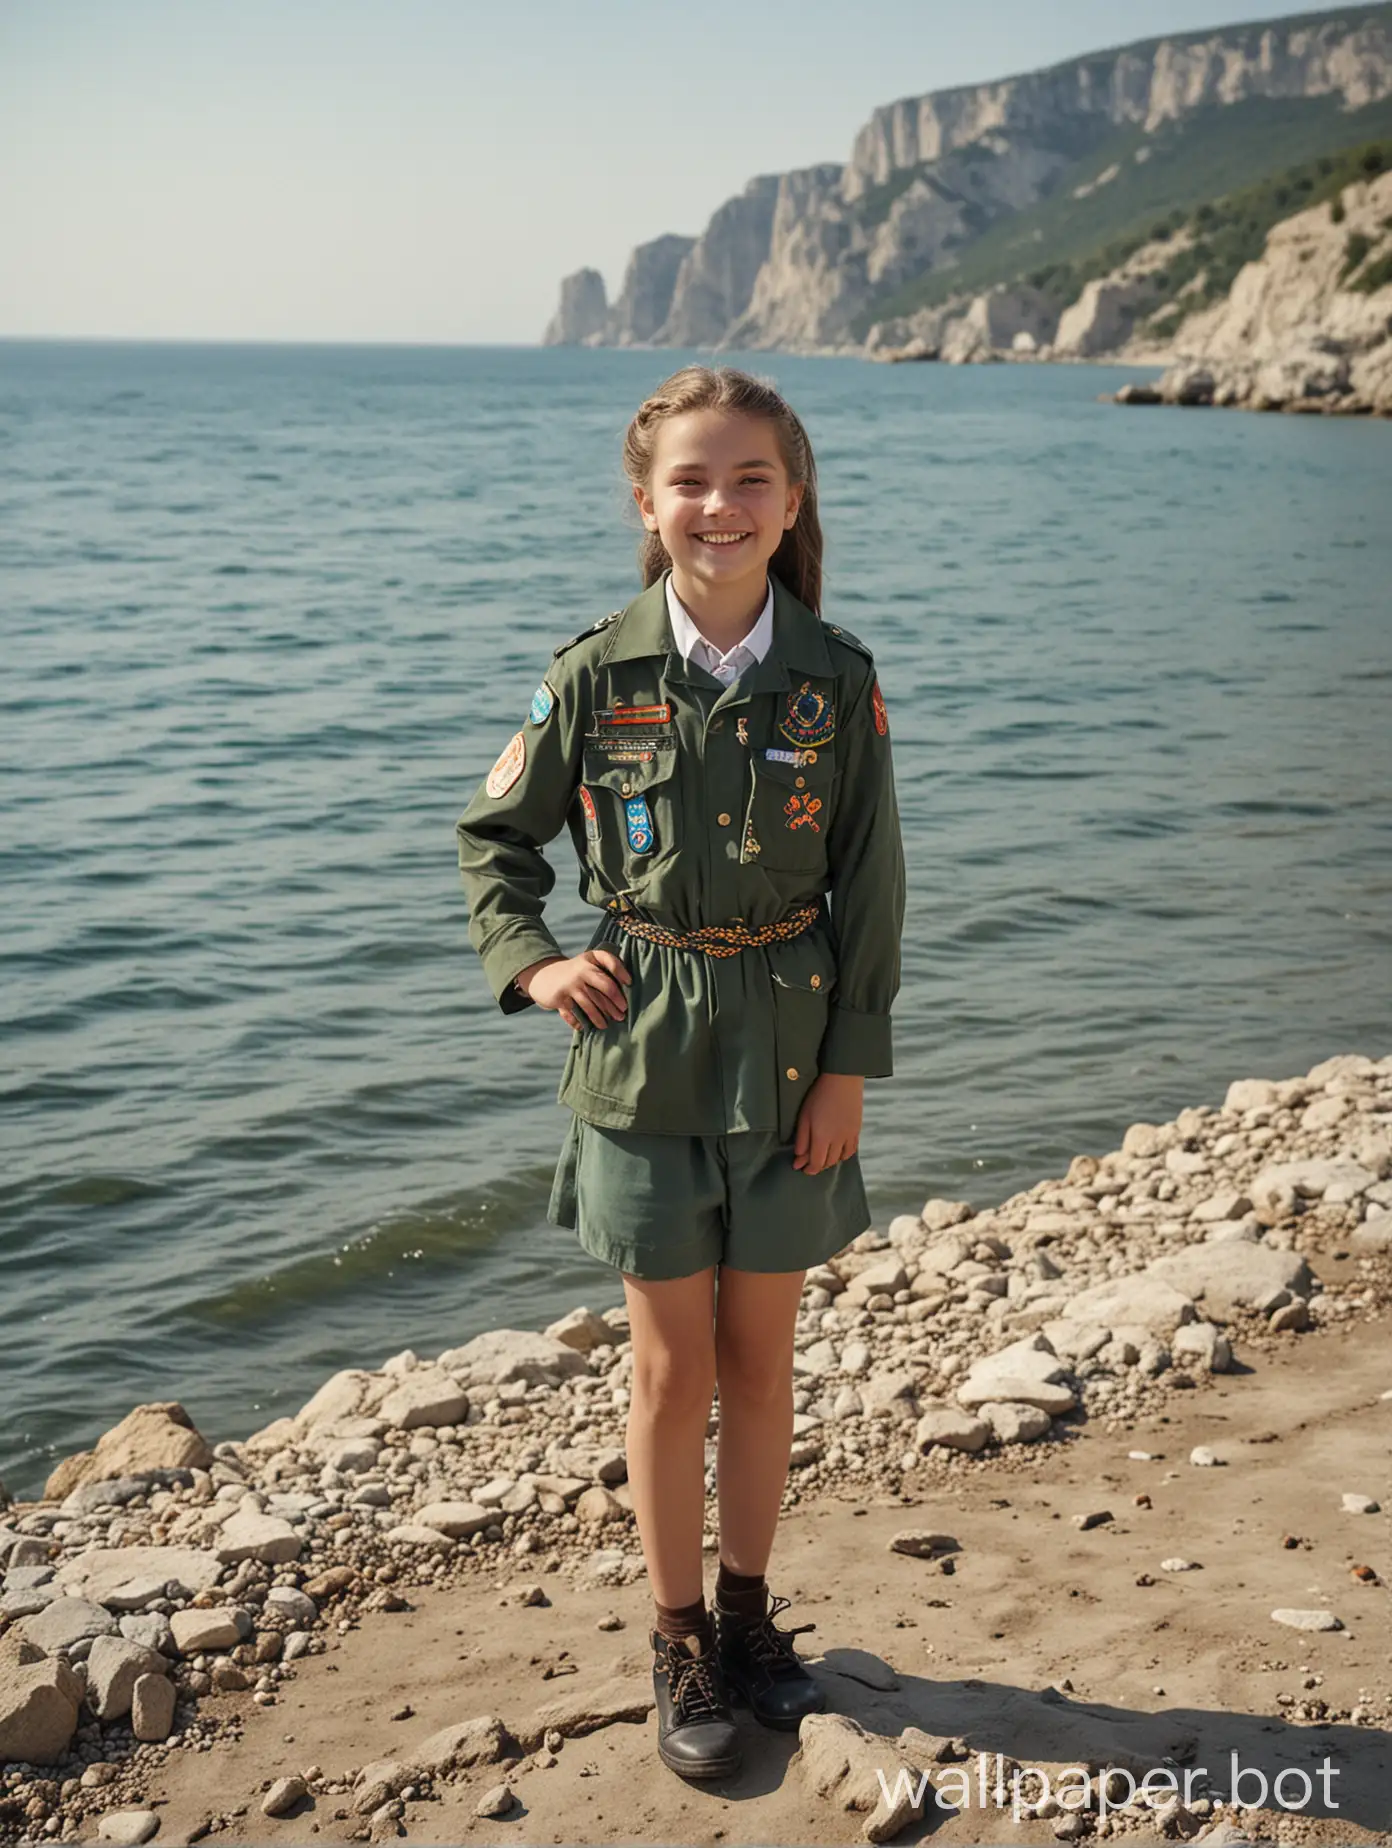 Крым, вид на море, девочка-скаут 11 лет, в полный рост, улыбка